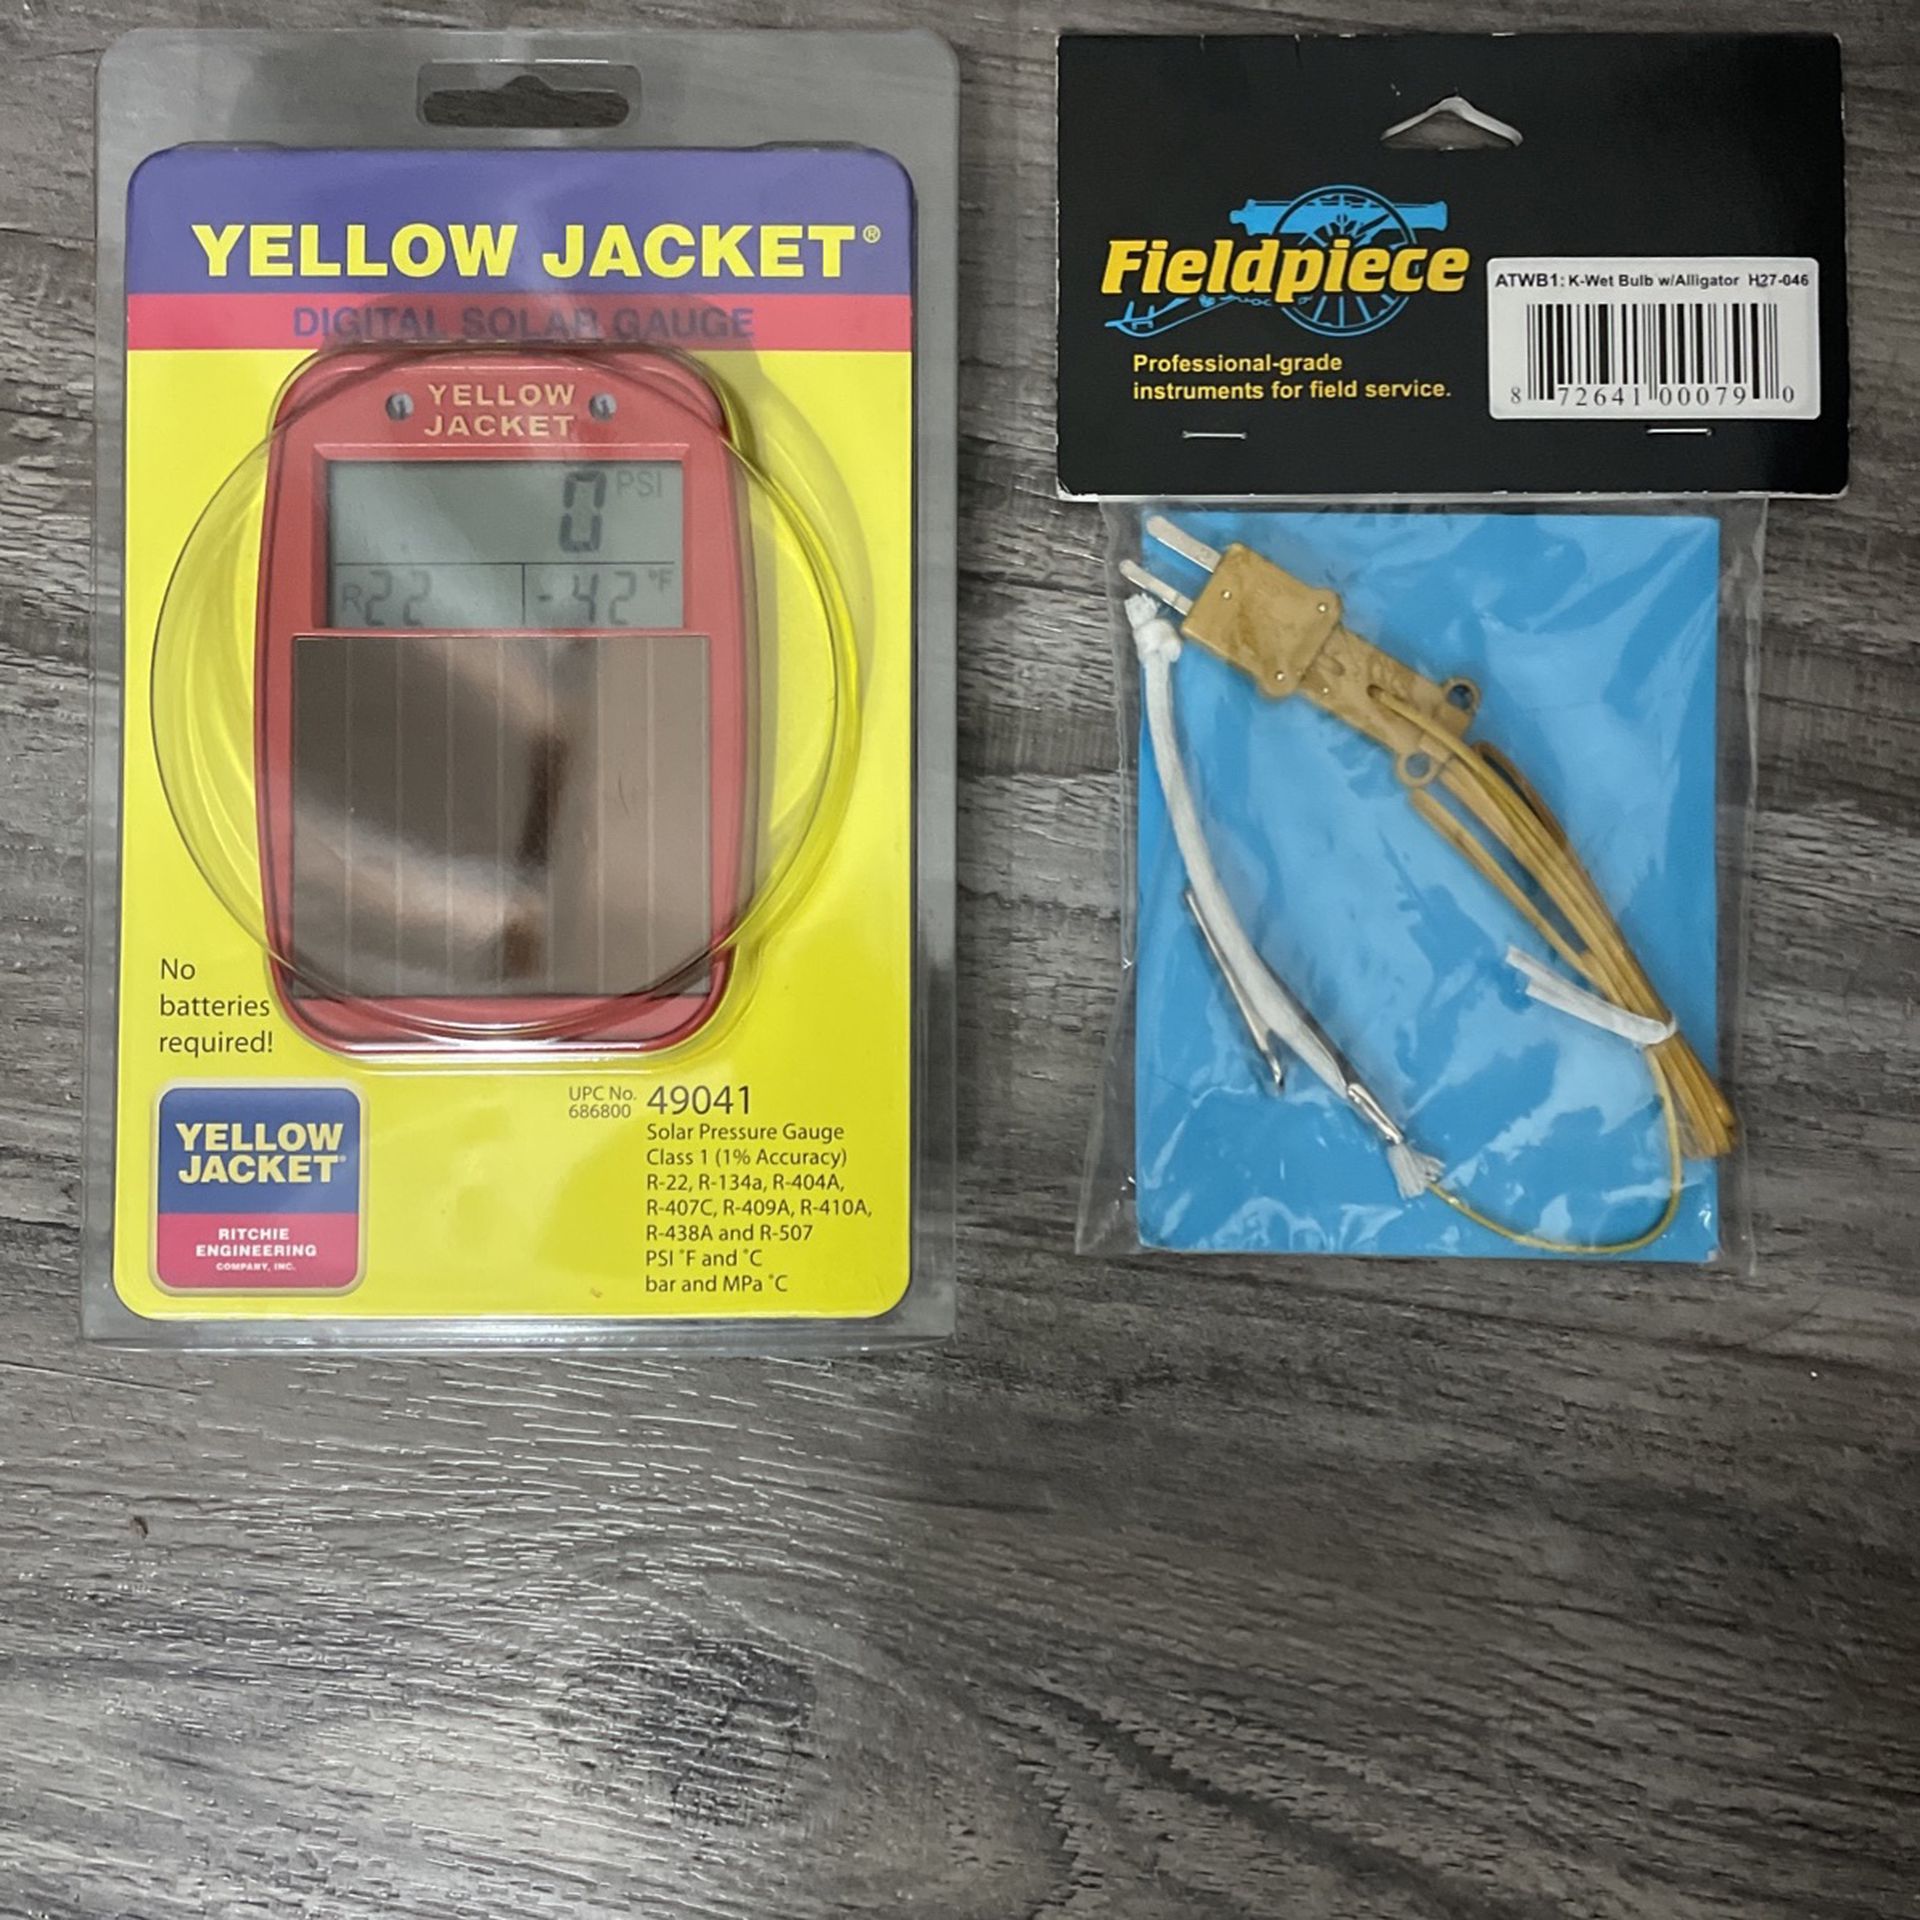 Yellow Jacket Digital Solar Gauge & Fieldpiece K-wet Bulb